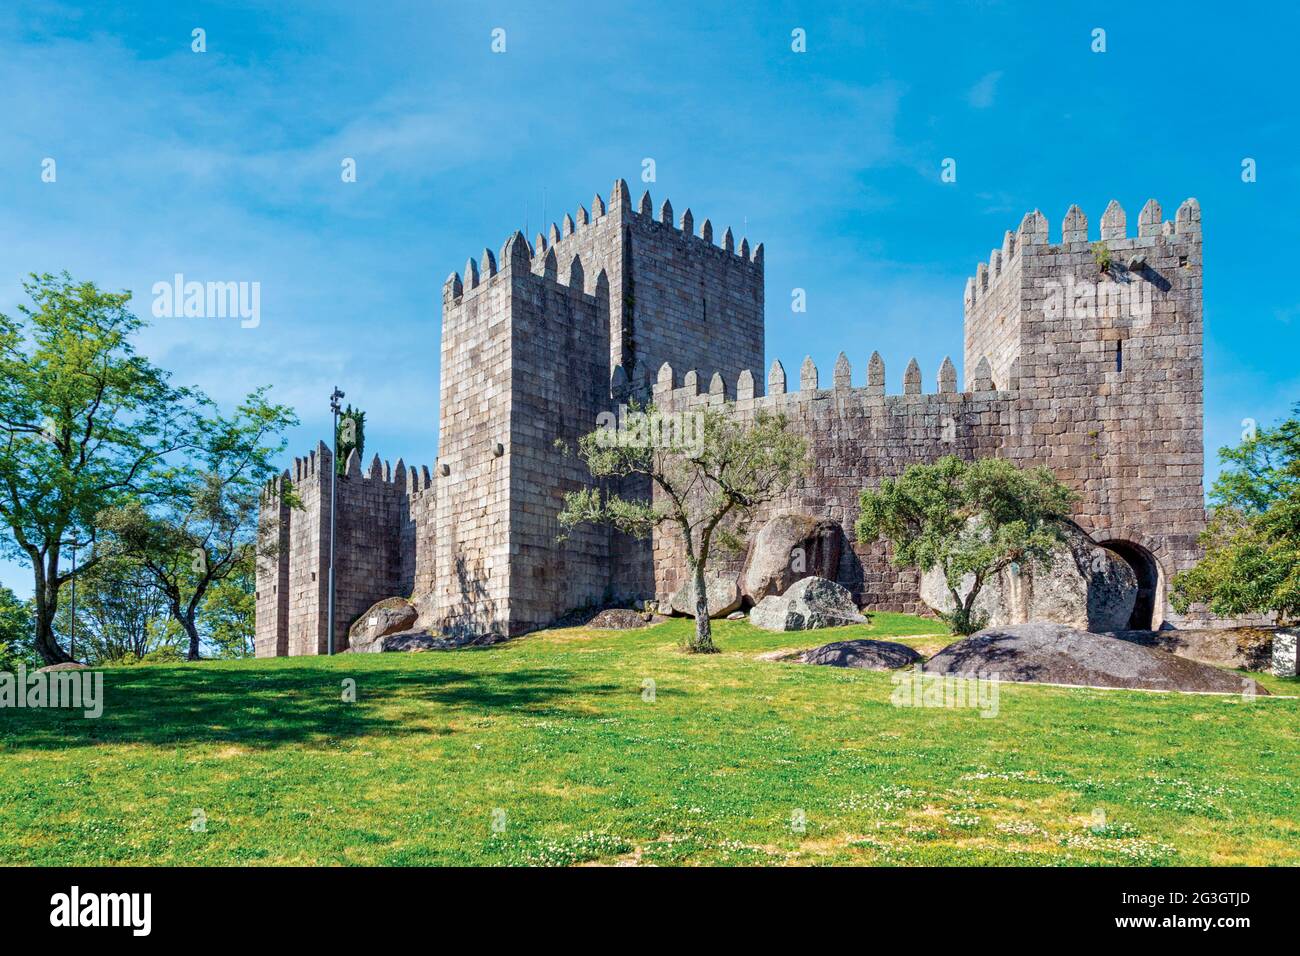 Guimaraes, Bezirk Braga, Portugal. Castelo de Guimaraes oder Burg Guimaraes. Gegründet im 10. Jahrhundert und bekannt als Wiege Portugals. Der Stockfoto